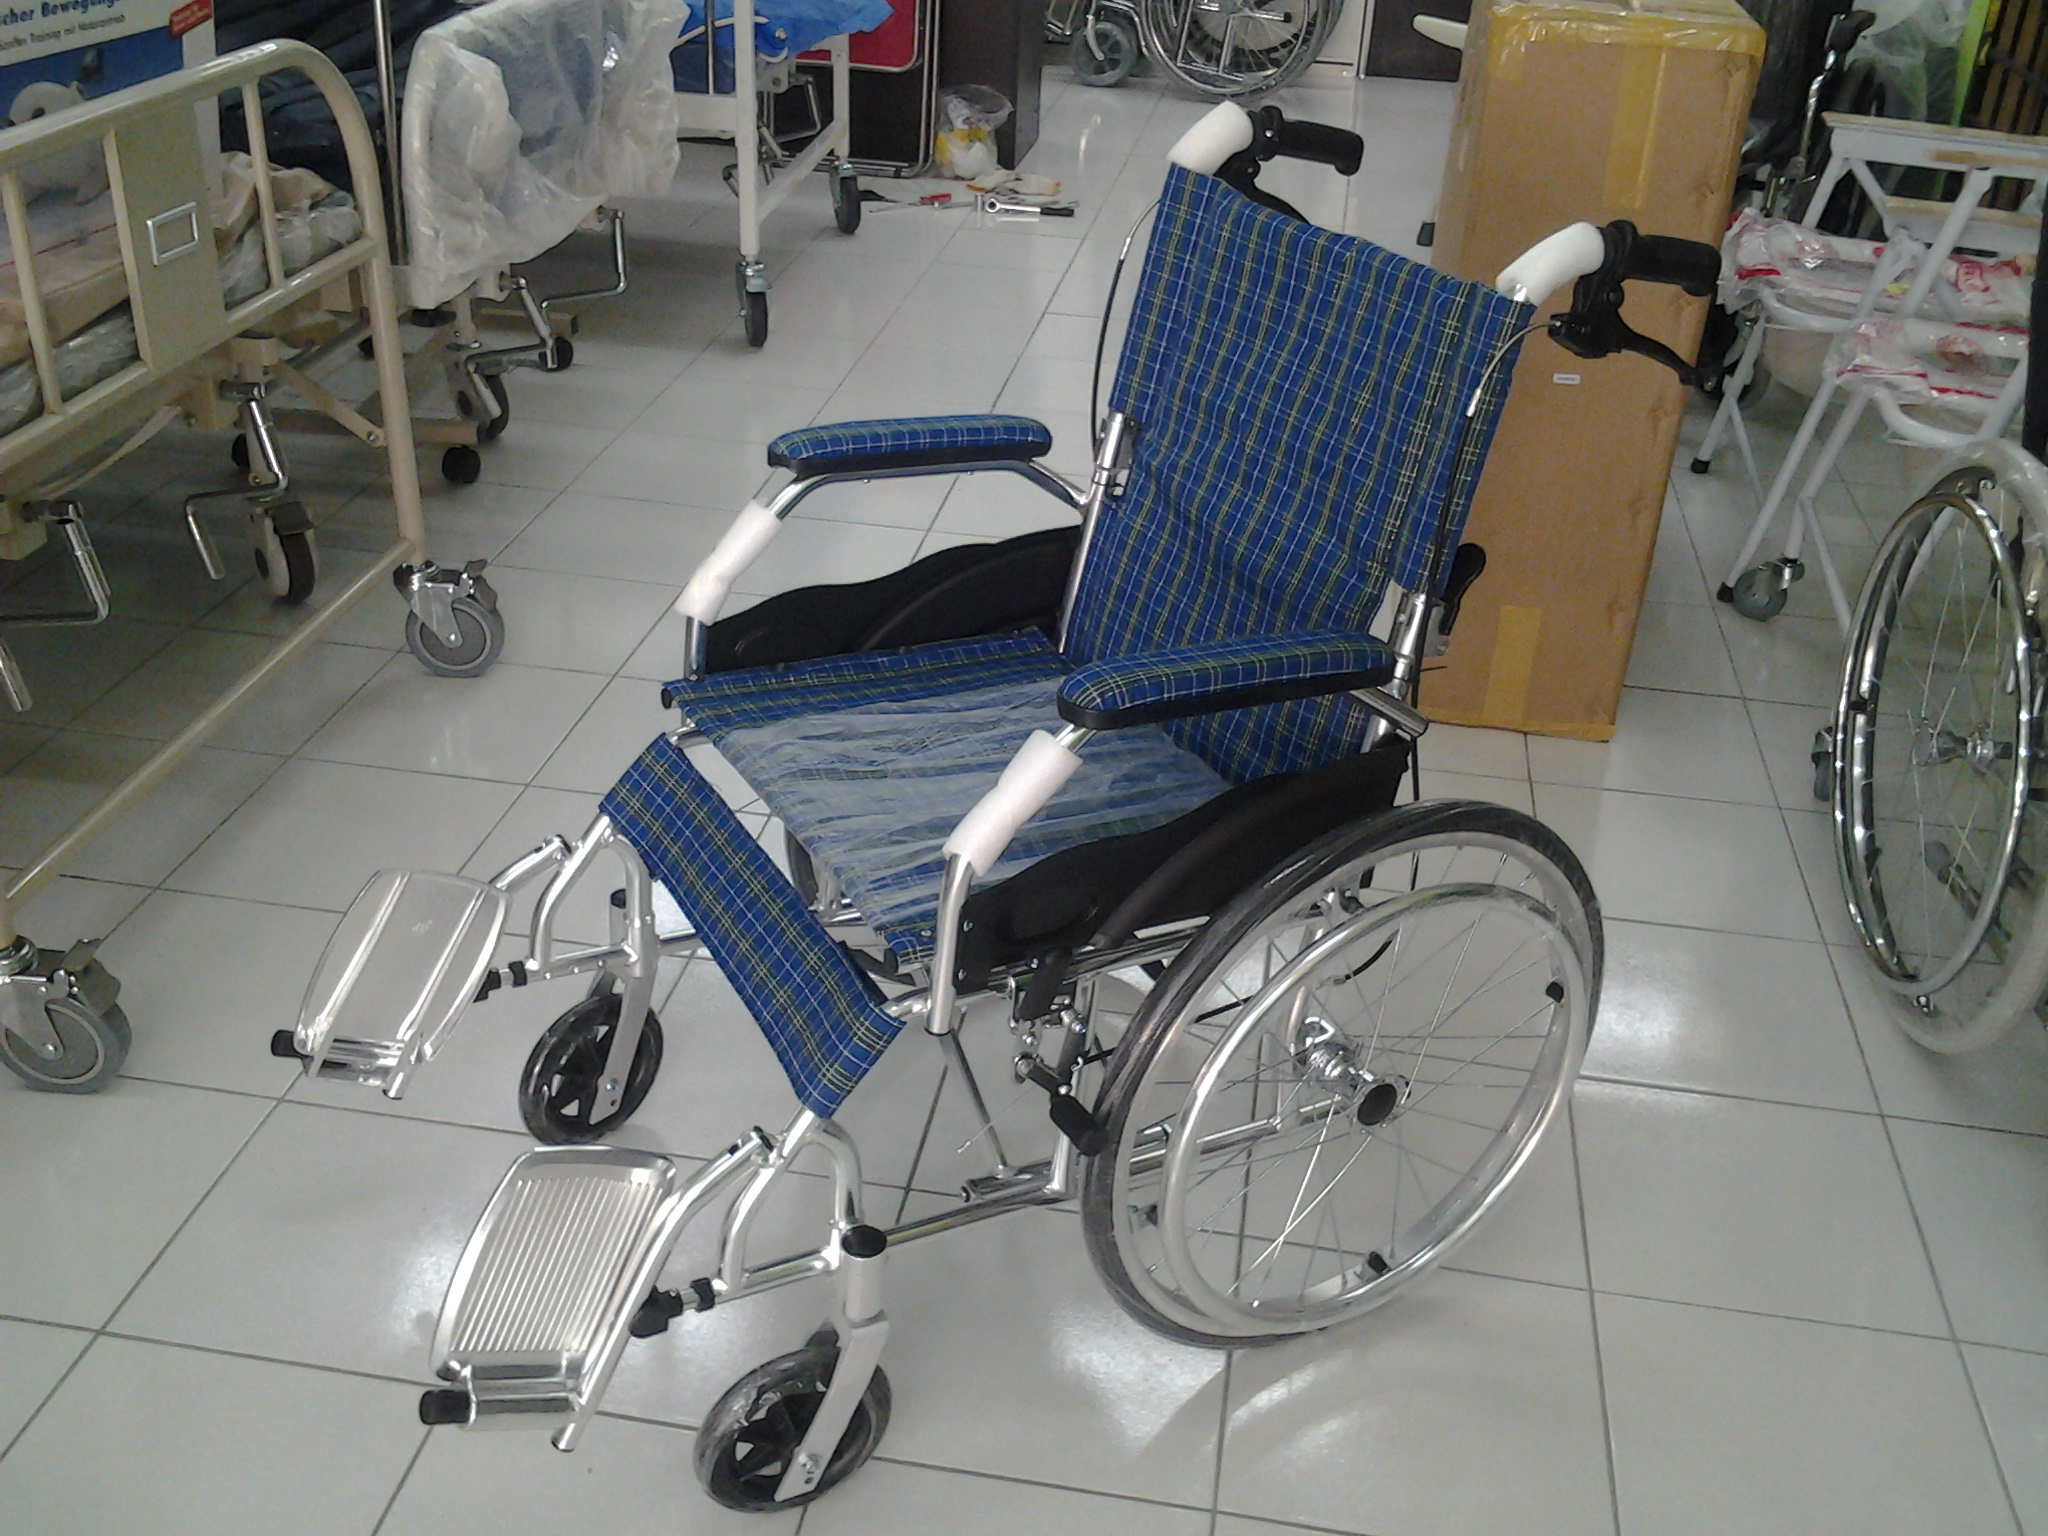 Compact Lightweight Wheelchair 863L